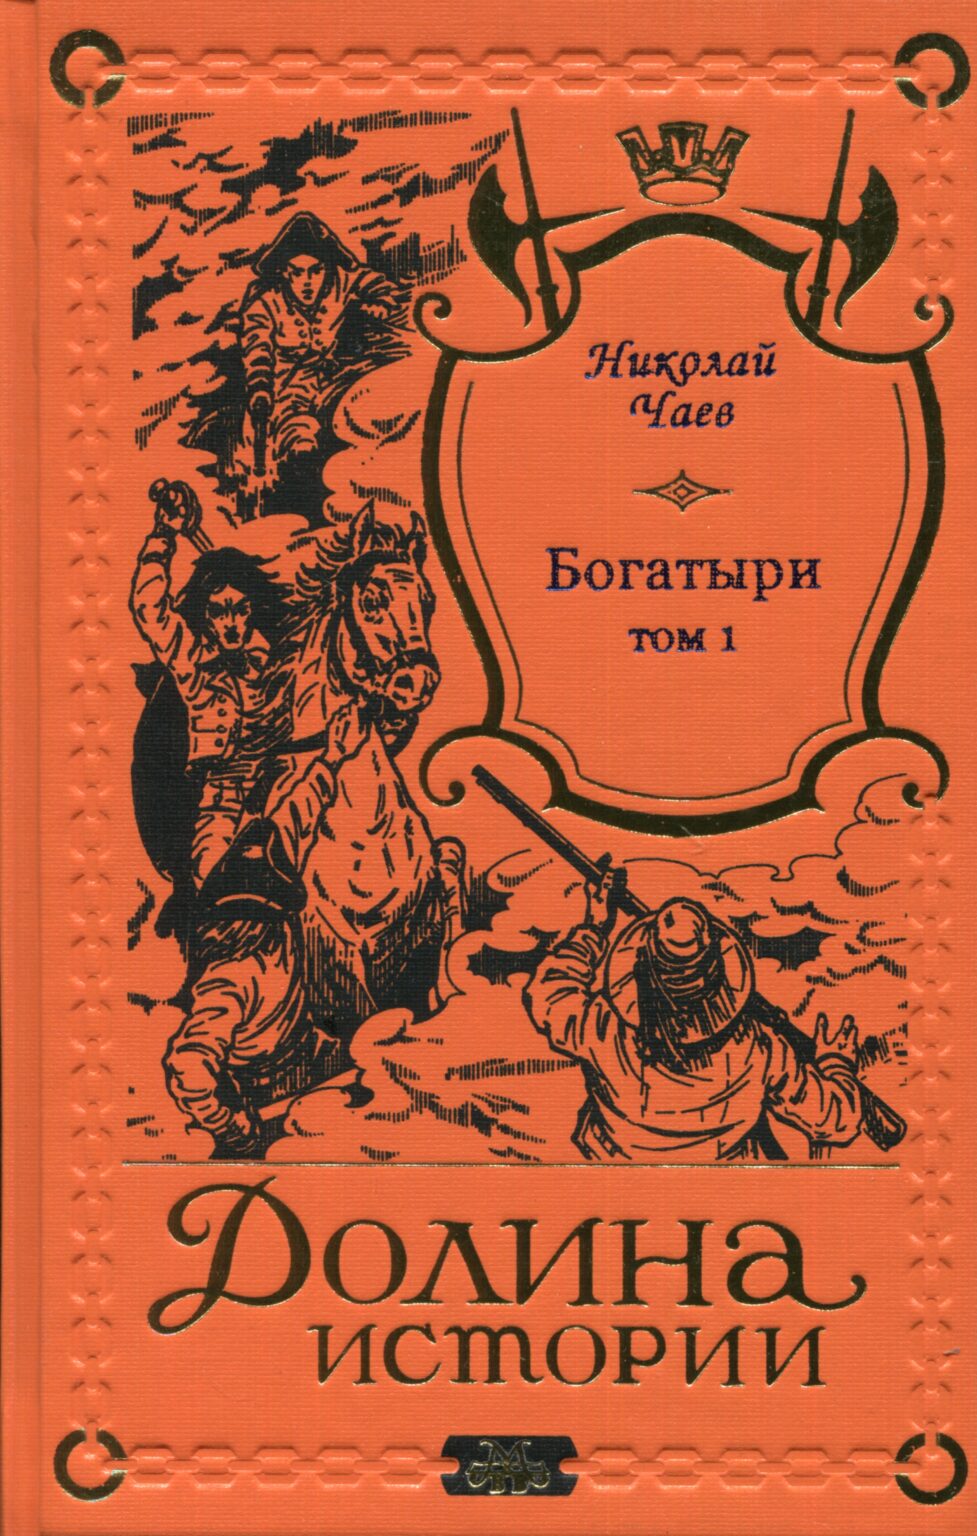 Н. Чаев. "Богатыри" в 2 томах